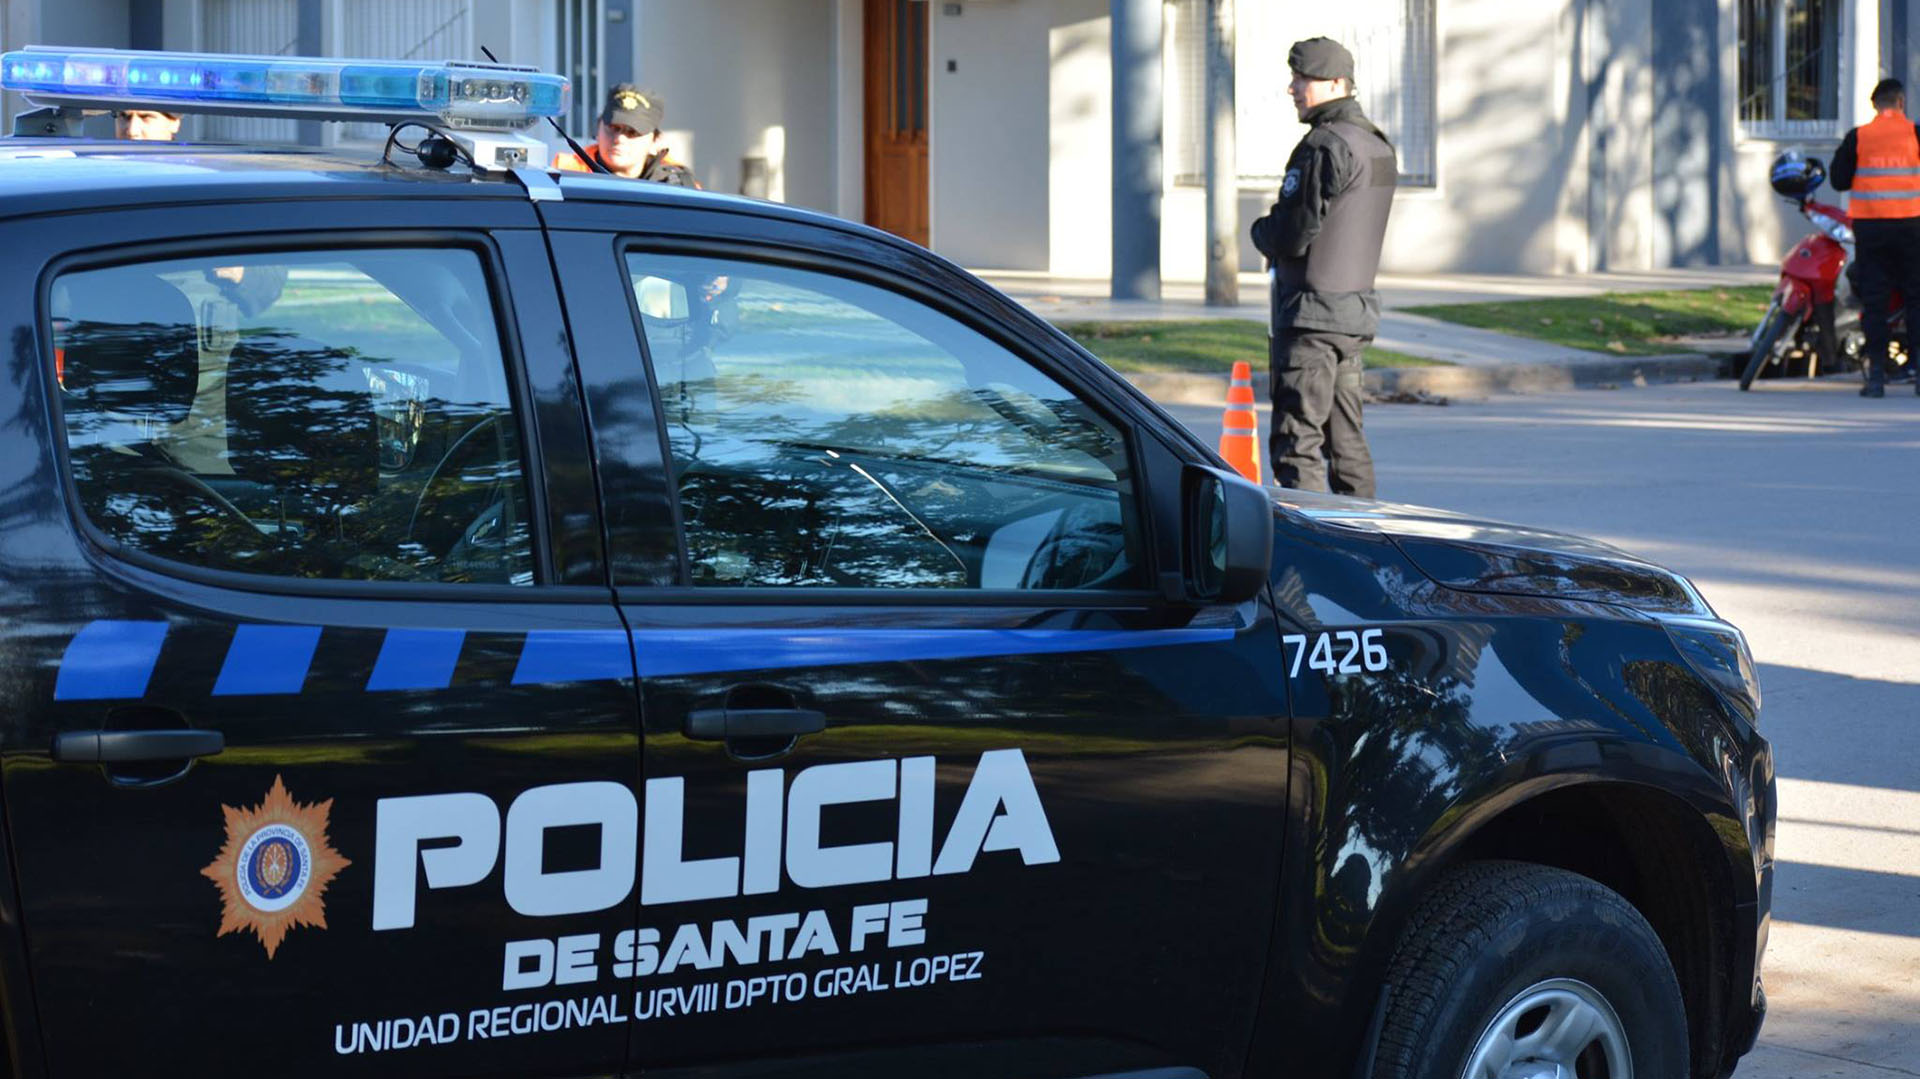 Según una encuesta, la corrupción ligada al narcotráfico es el problema más grave que tiene la policía de Santa Fe